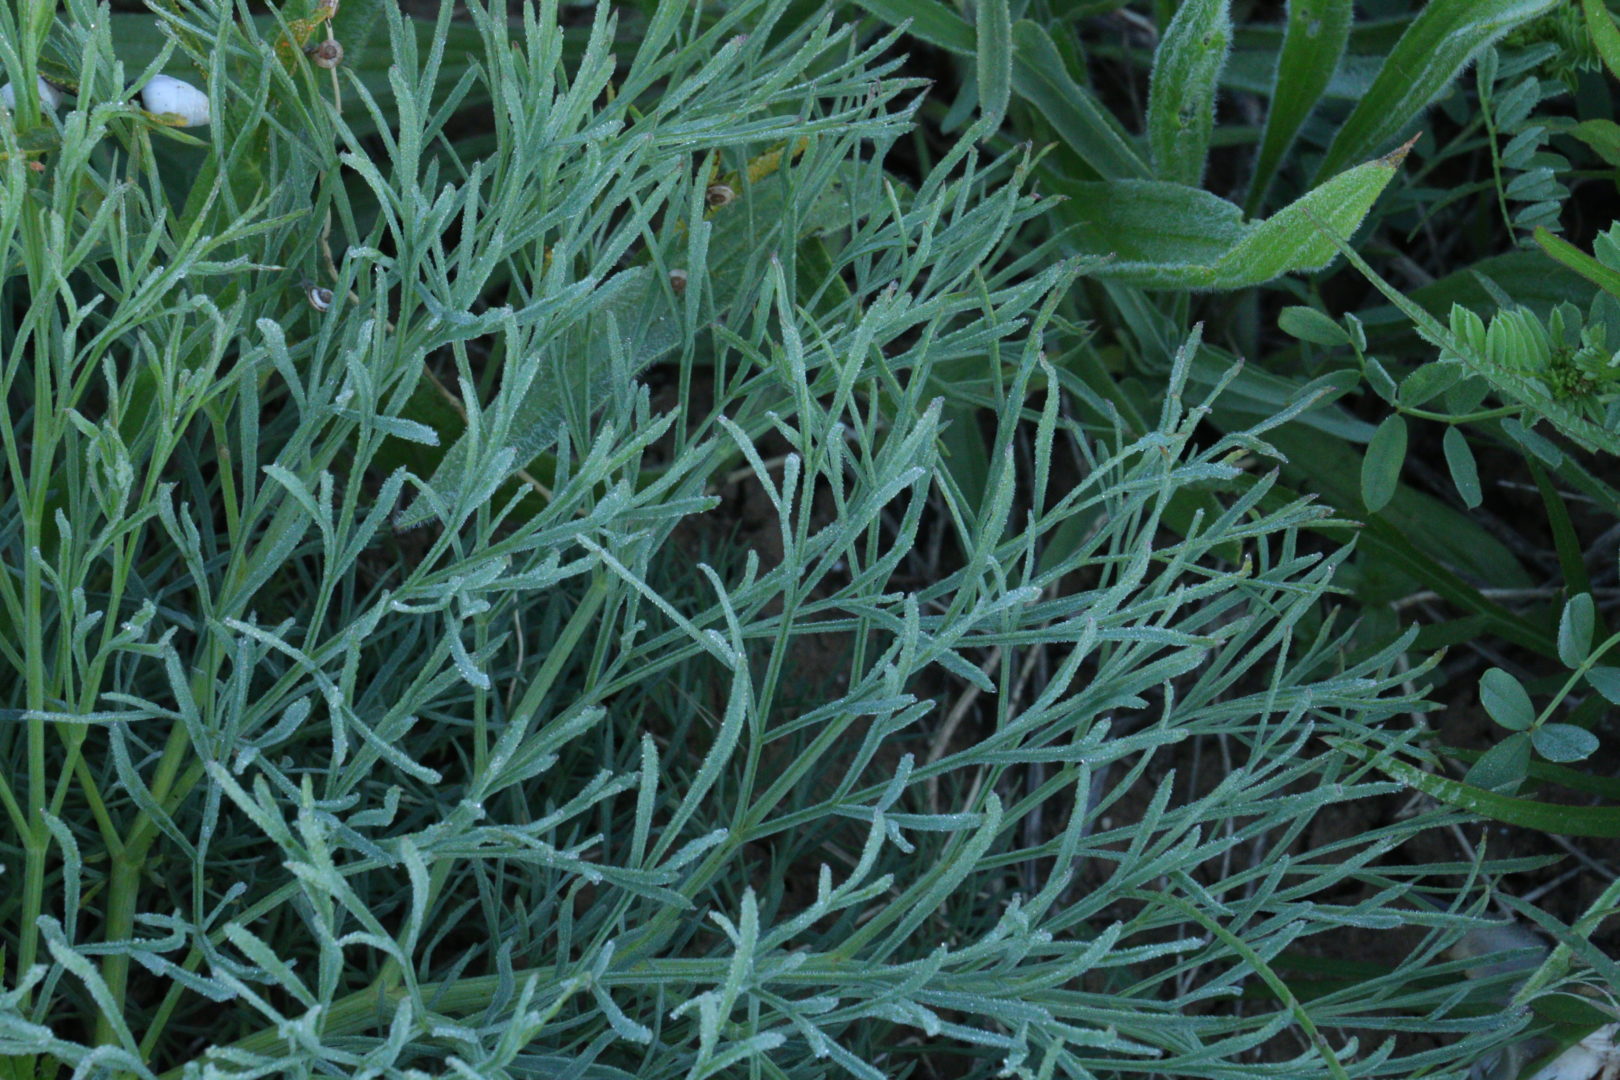 Сорное растение сизого цвета с тонкими листьями - полынь полевая, или полынь равнинная